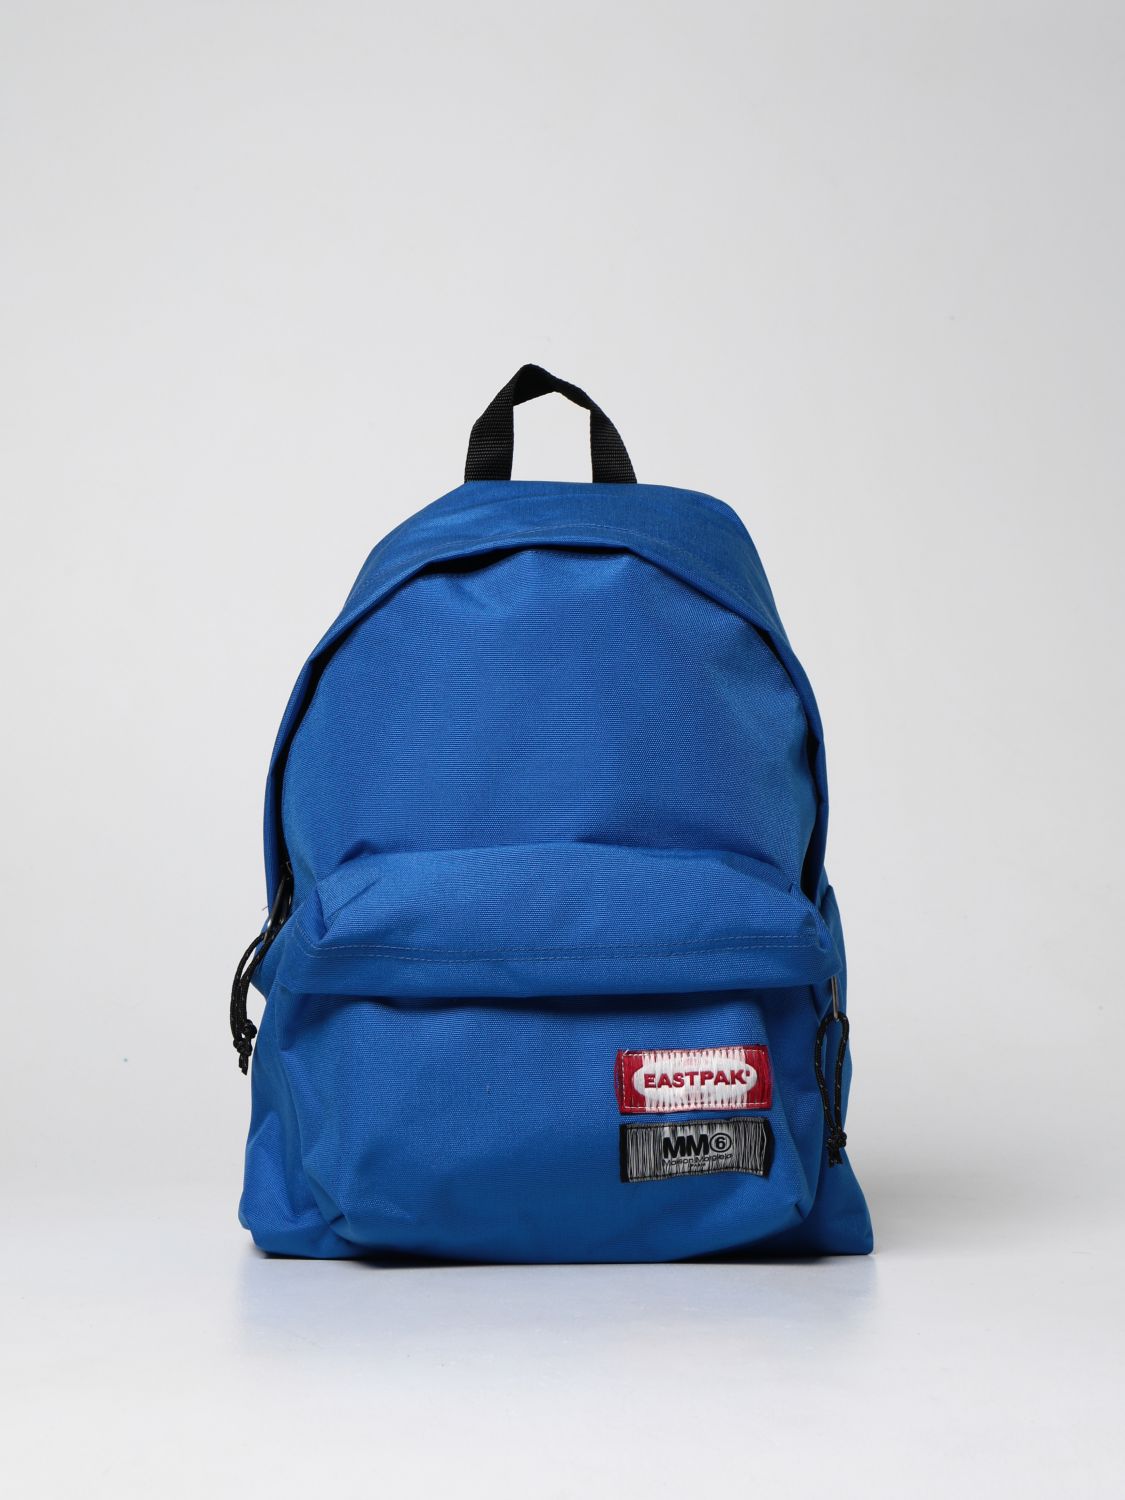 Backpack Eastpak: Mm6 Maison Margiela x Eastpak nylon backpack blue 1